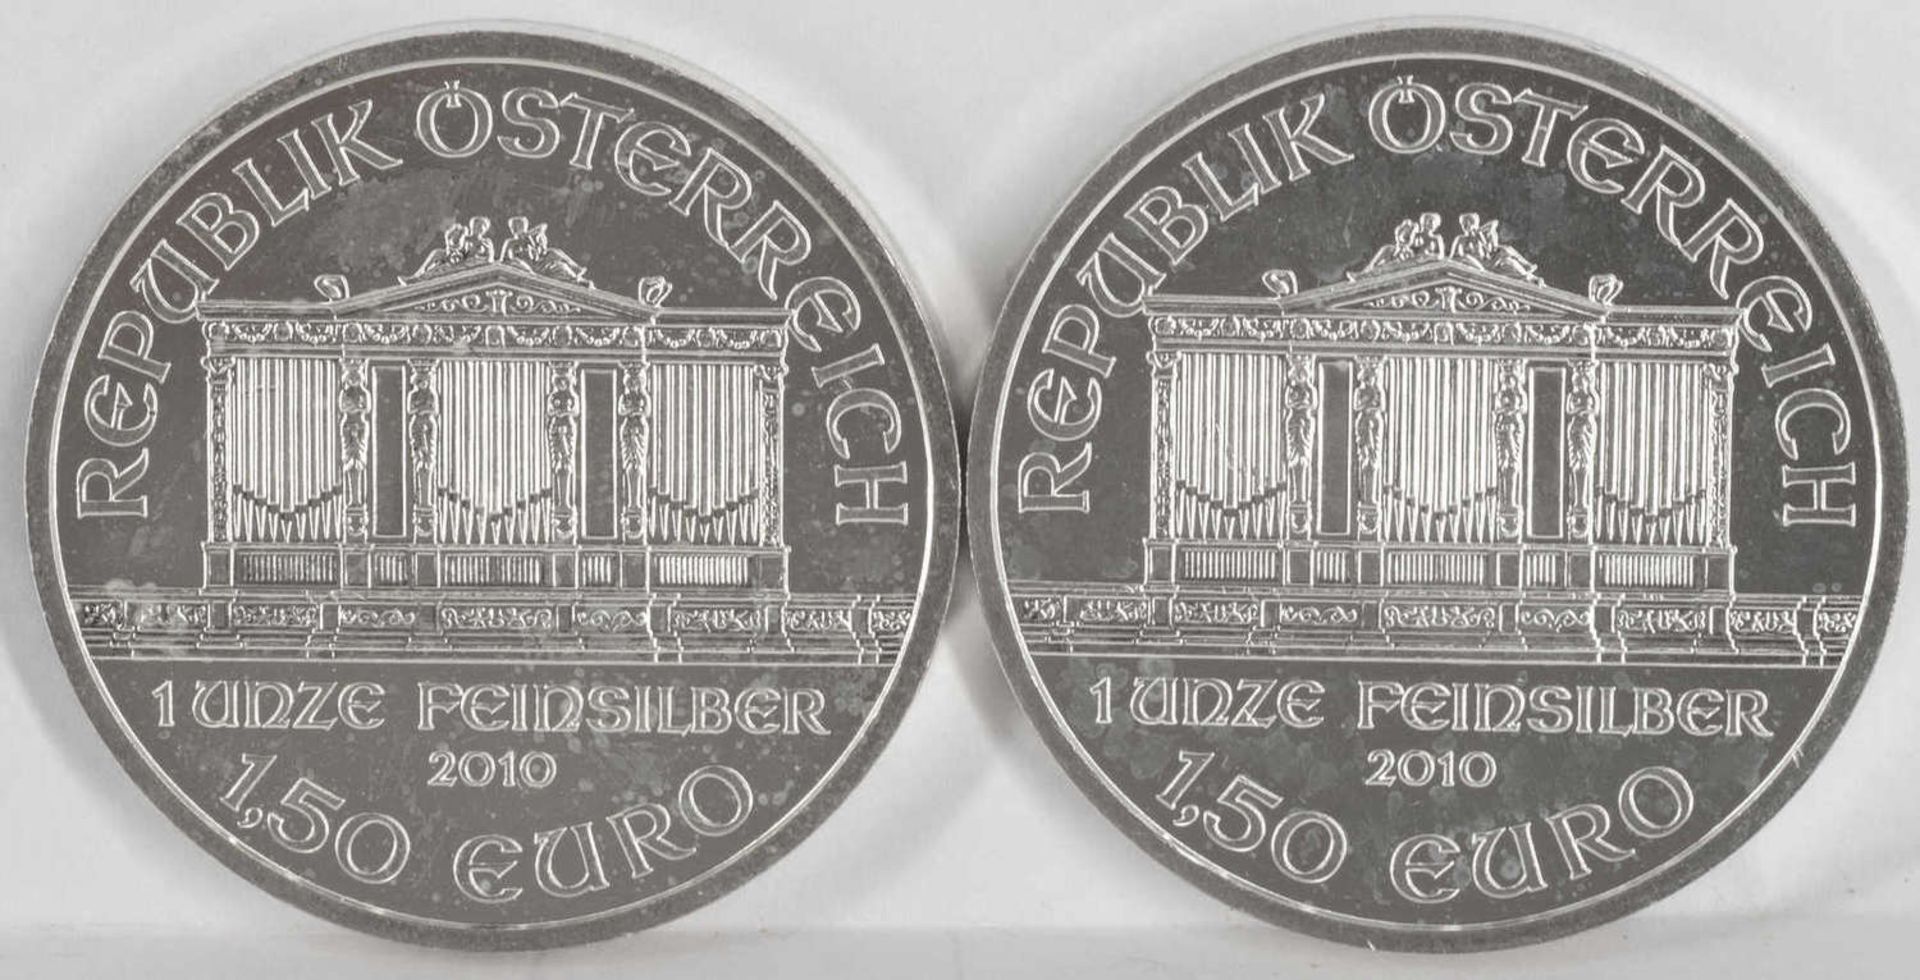 Österreich 2010, 2 x 1,5 Euro - Silbermünzen "Wiener Philharmoniker". Silber. Gewicht: 1 oz.